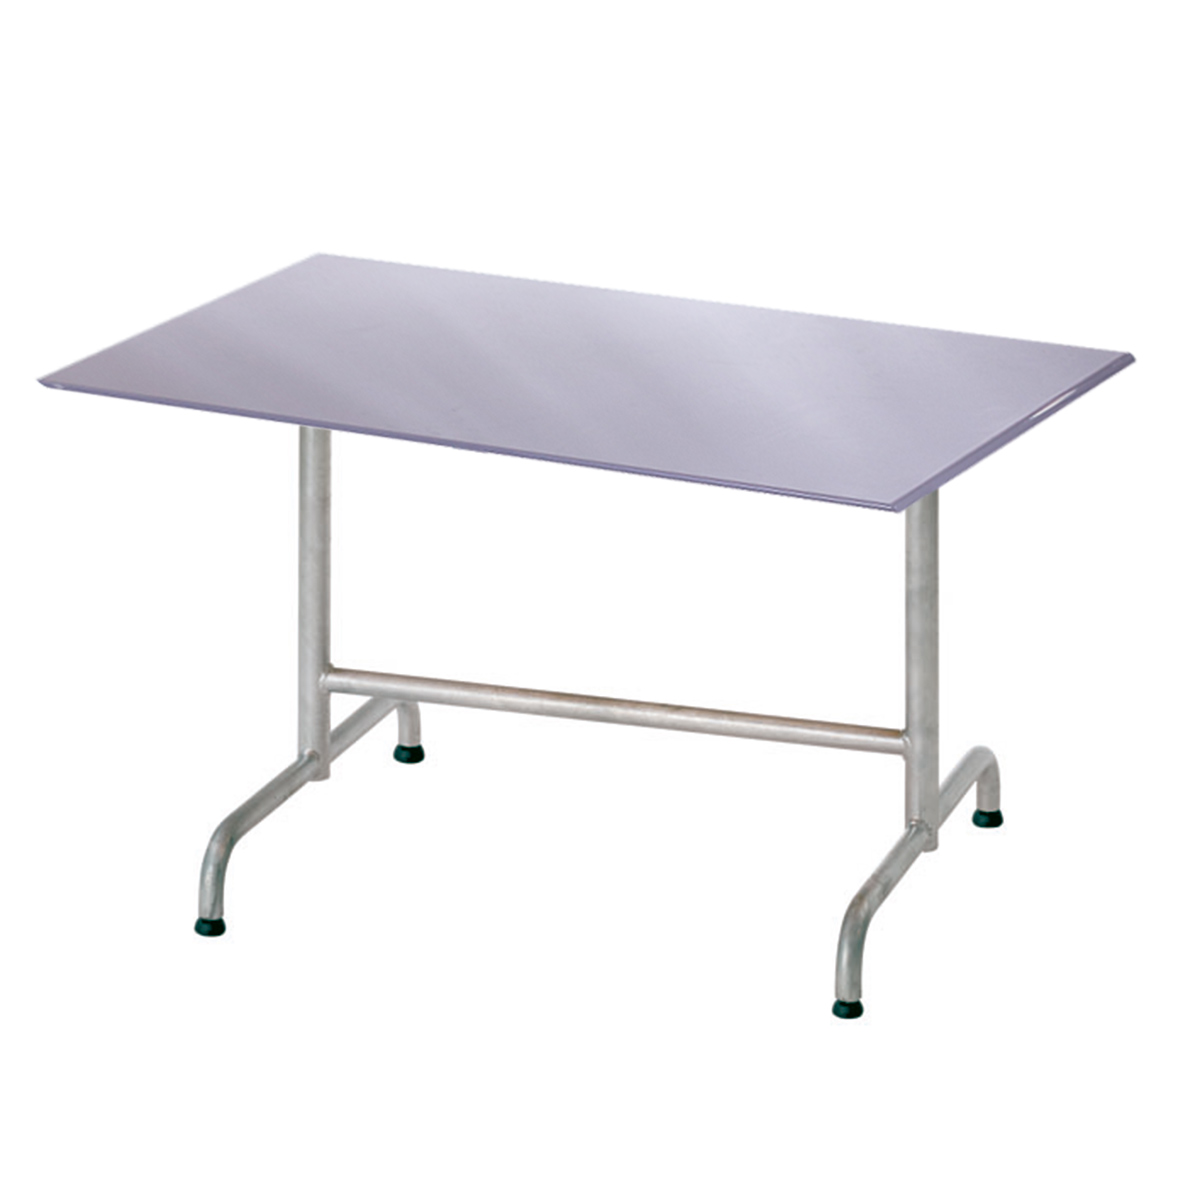 Table en PRV elegance gris platine mat 120x80